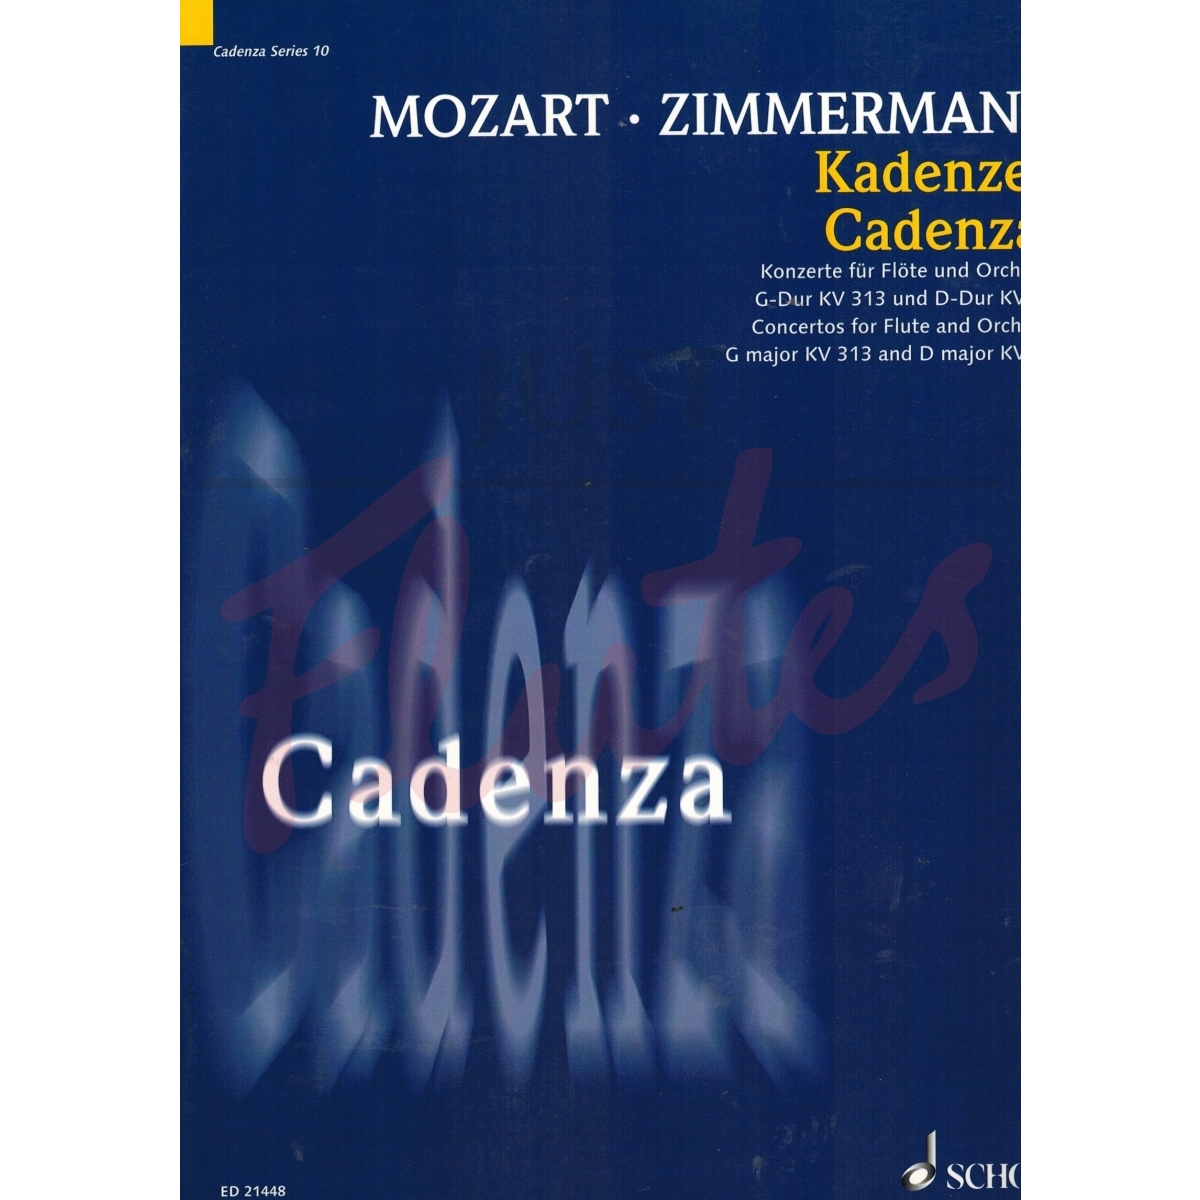 Cadenzas for Flute Concertos in G major and D major